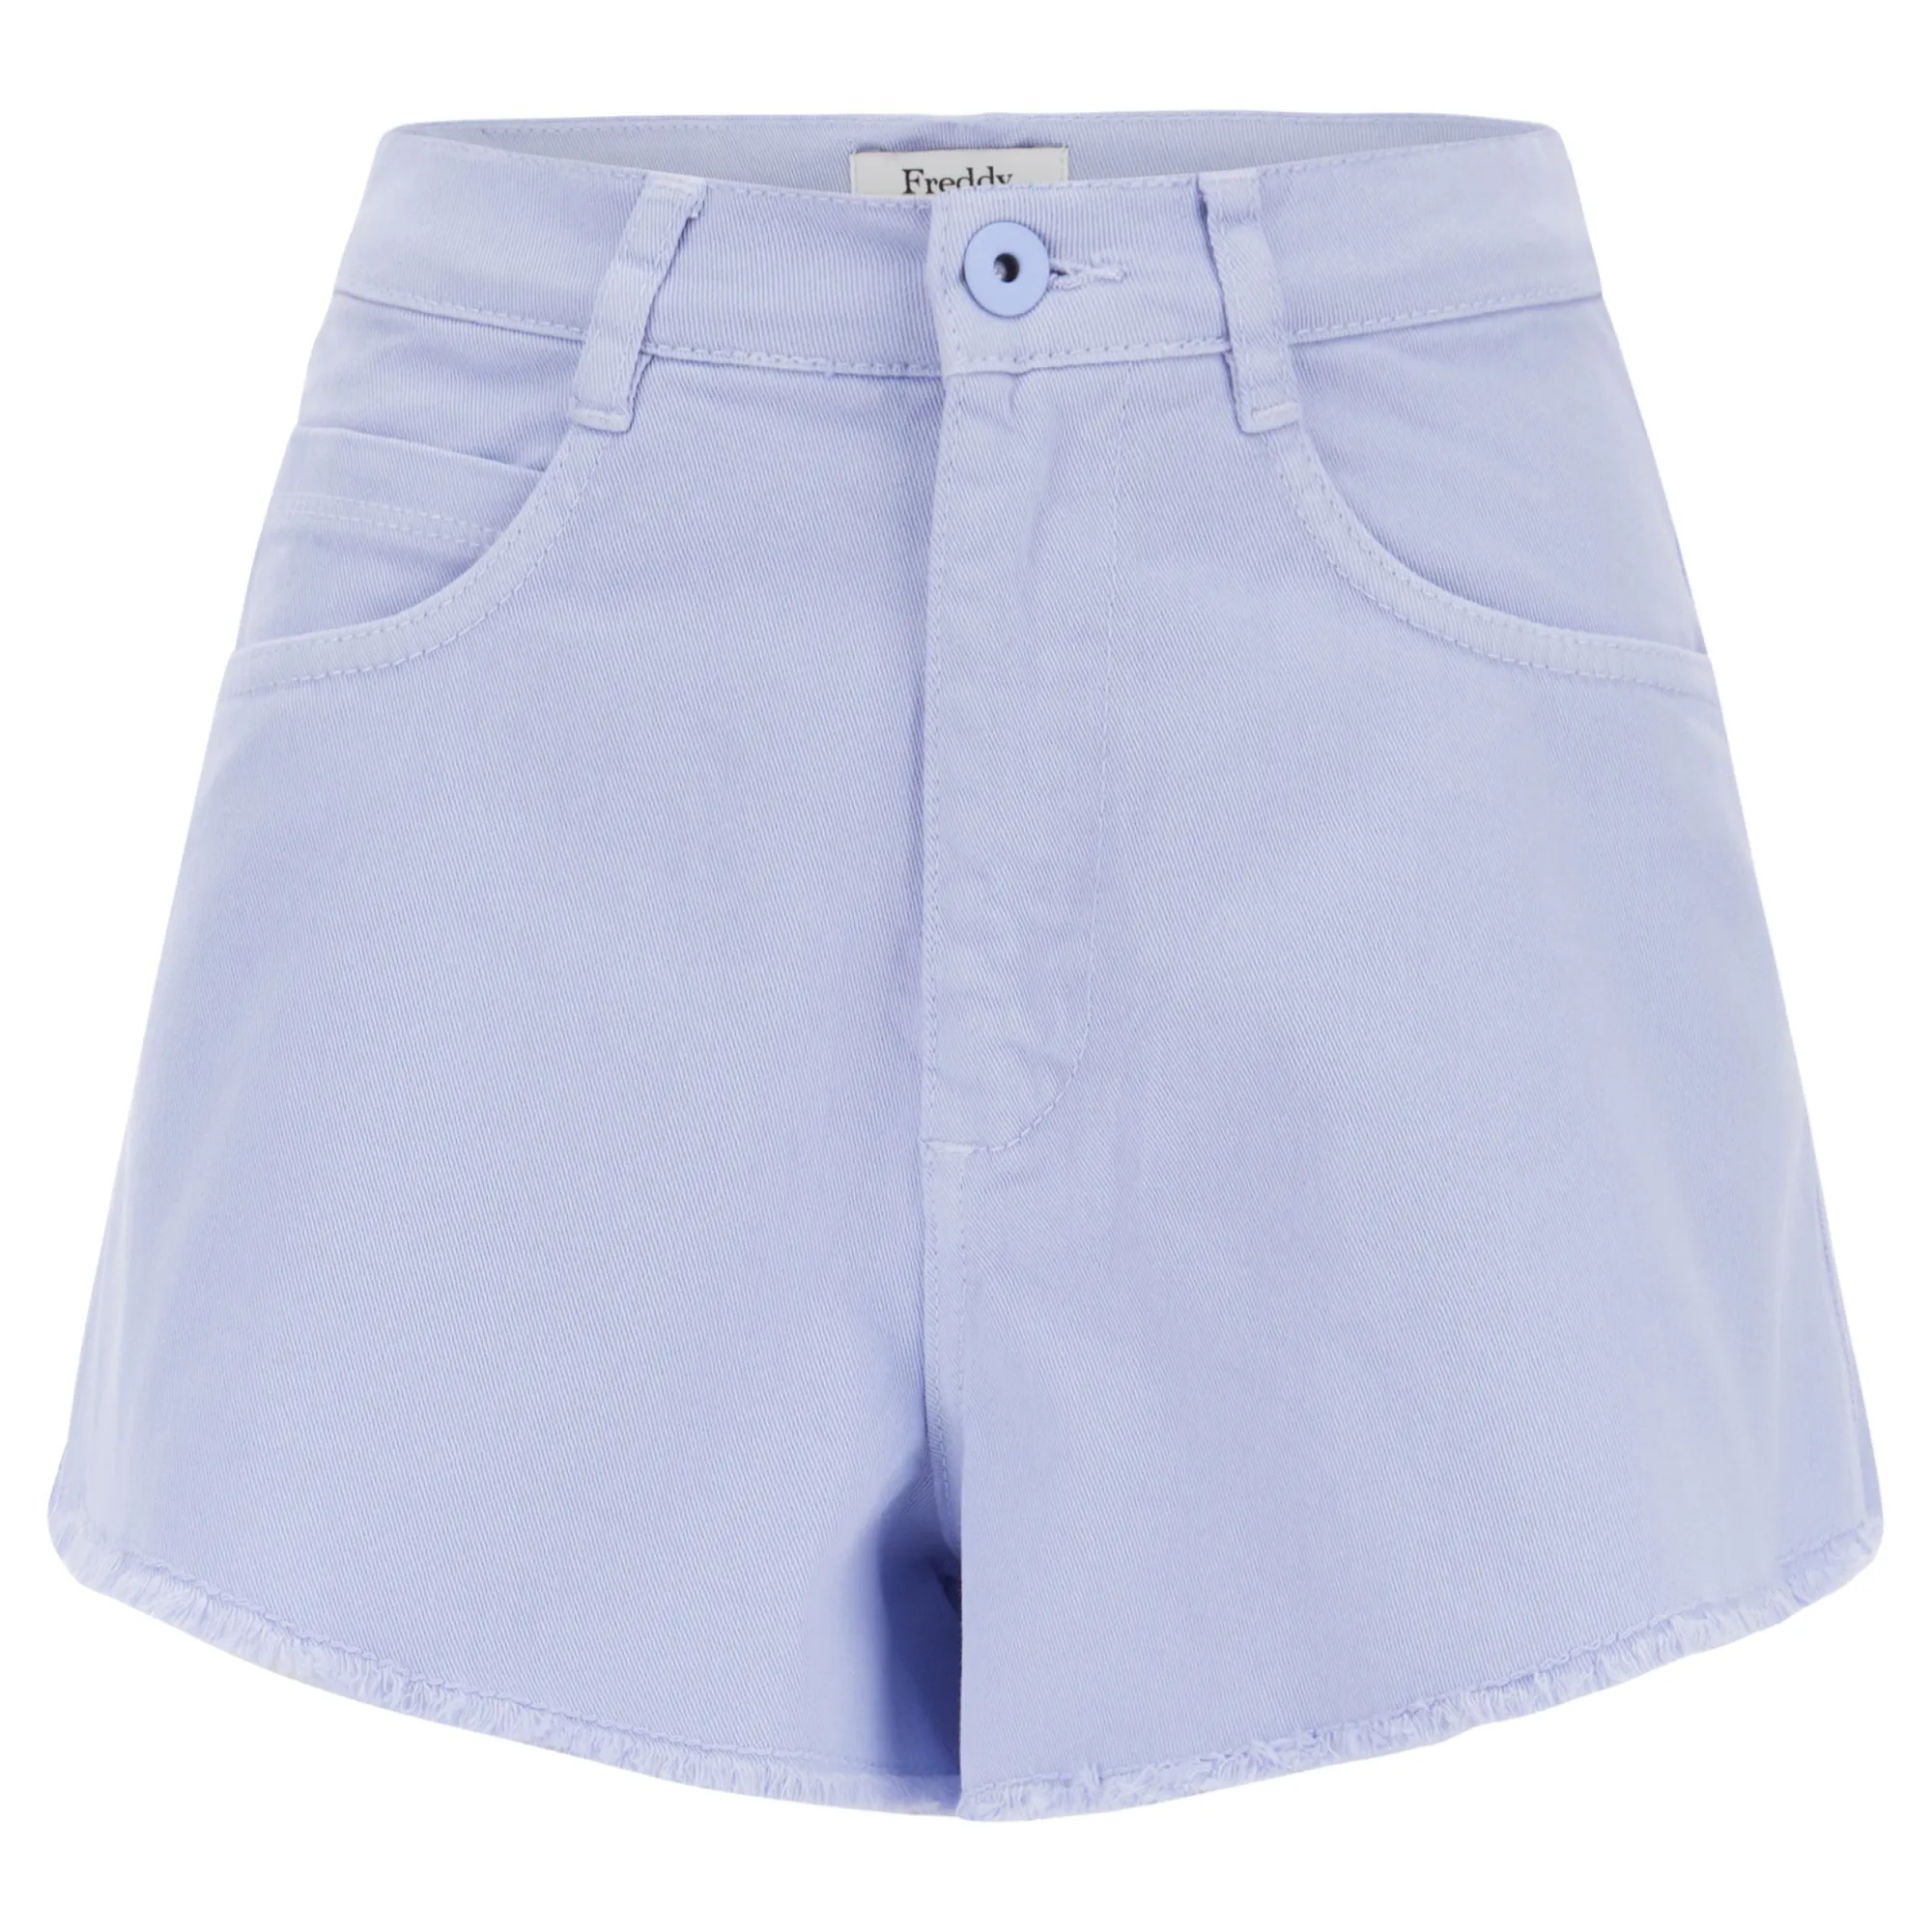 Freddy Damen Shorts - Fransiger Saum - Garment Dyed - Direct Dyed - Blau - C67X